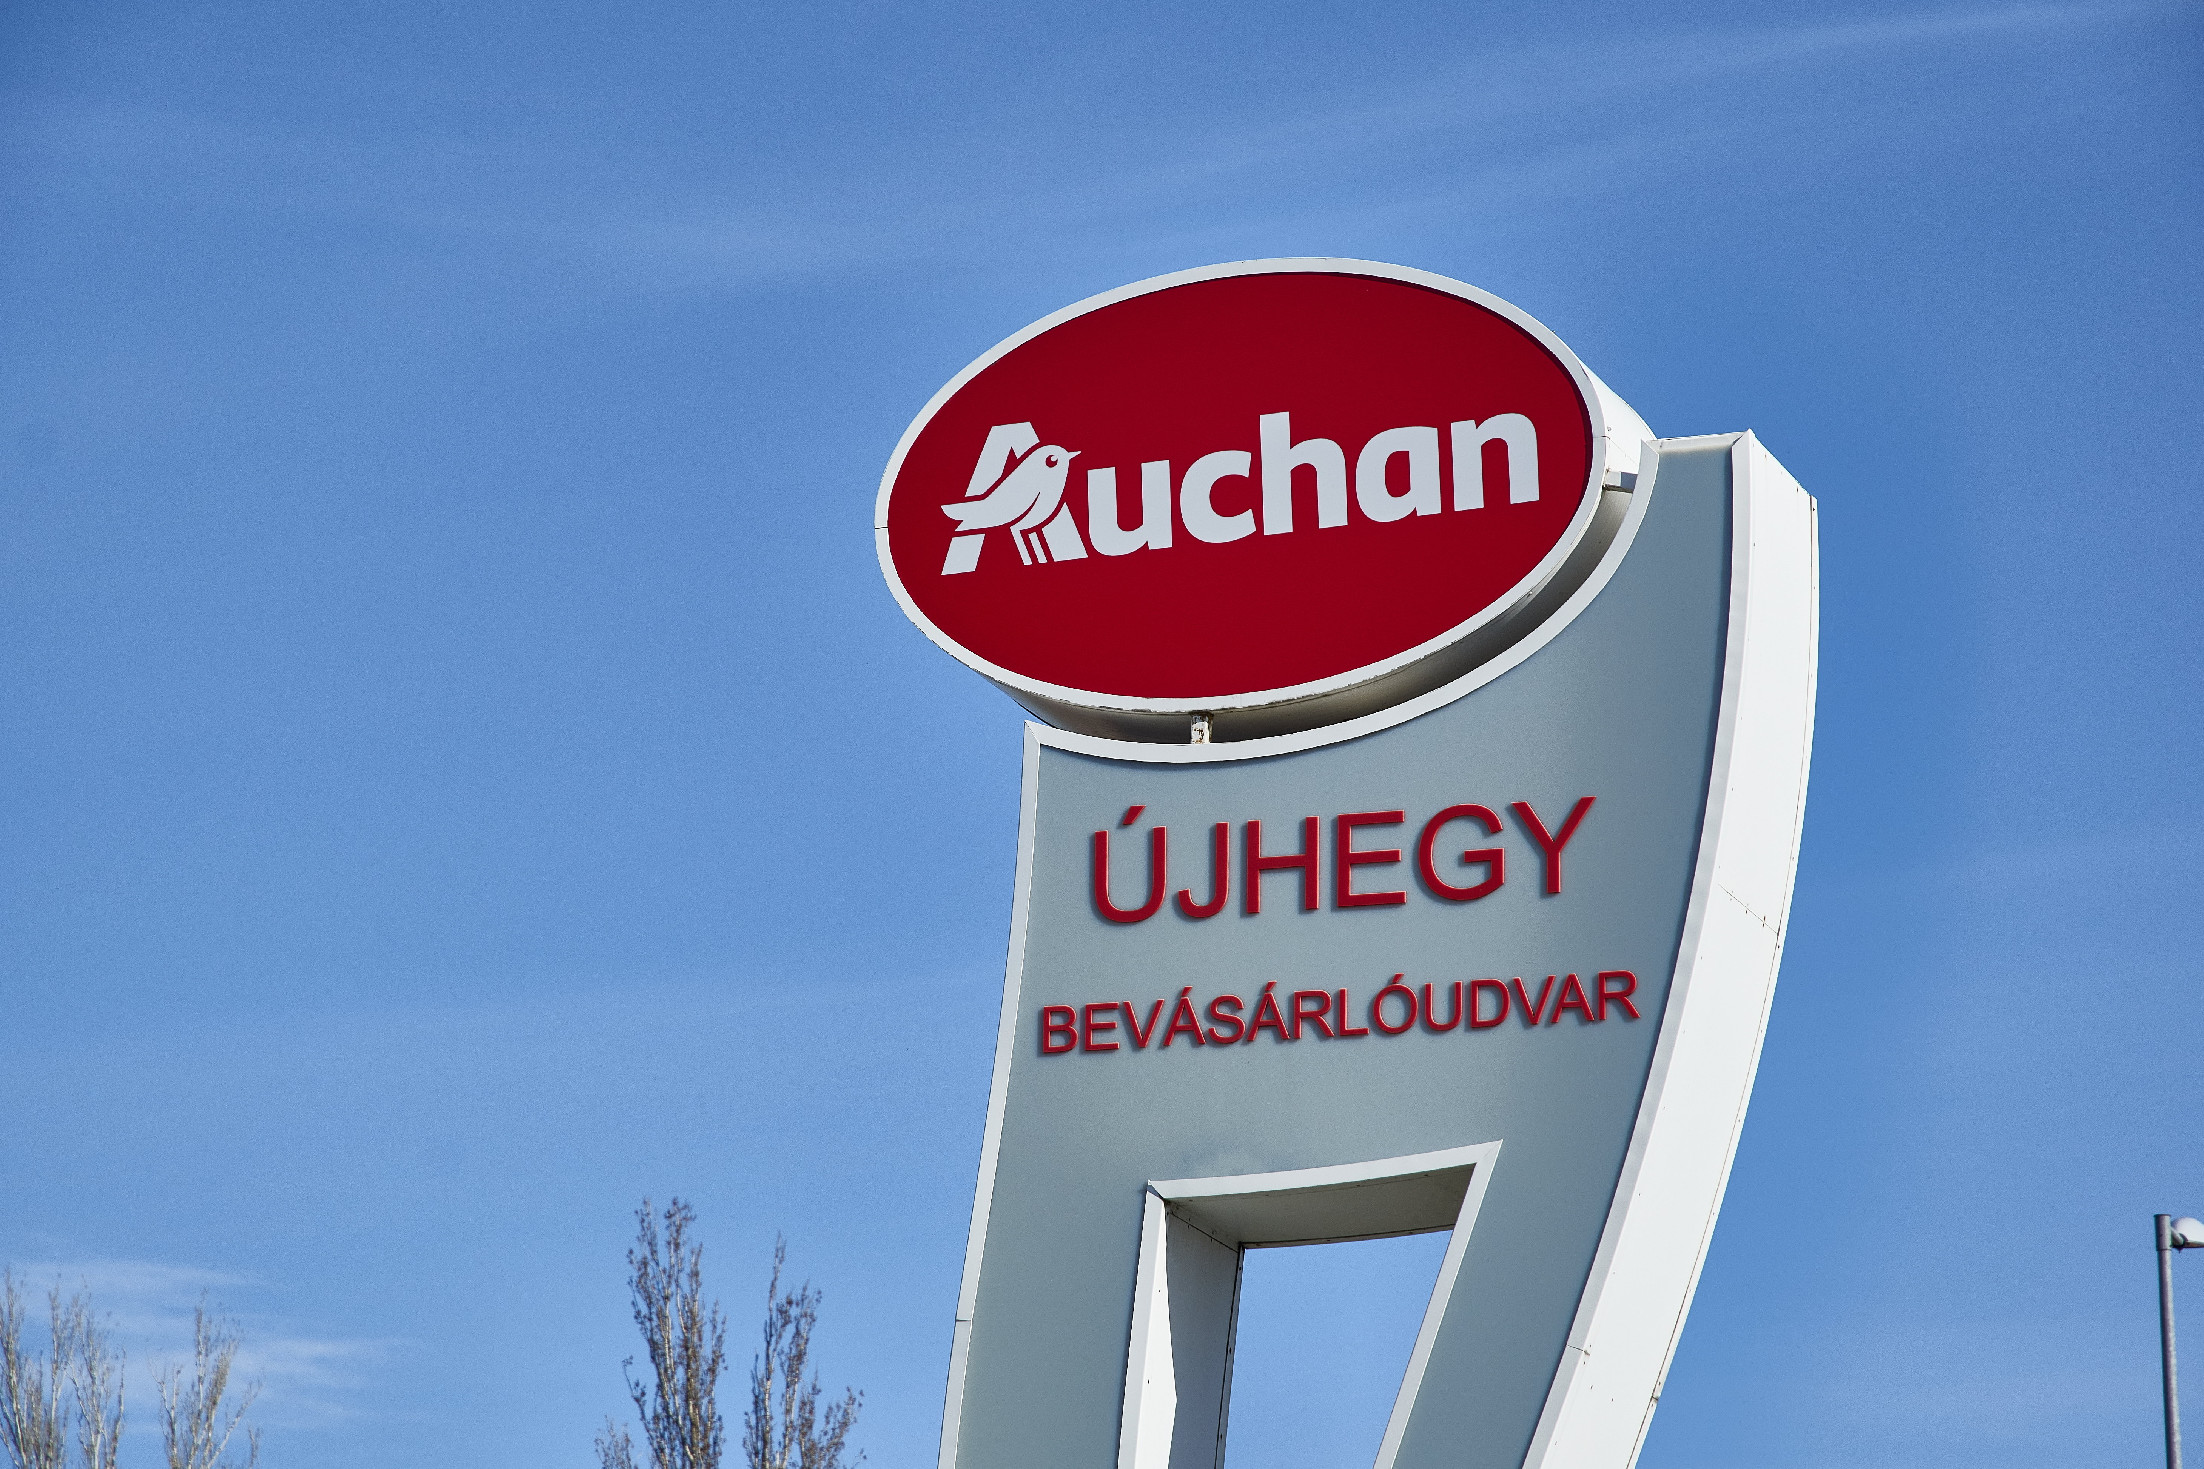 Csalókra figyelmeztet az Auchan